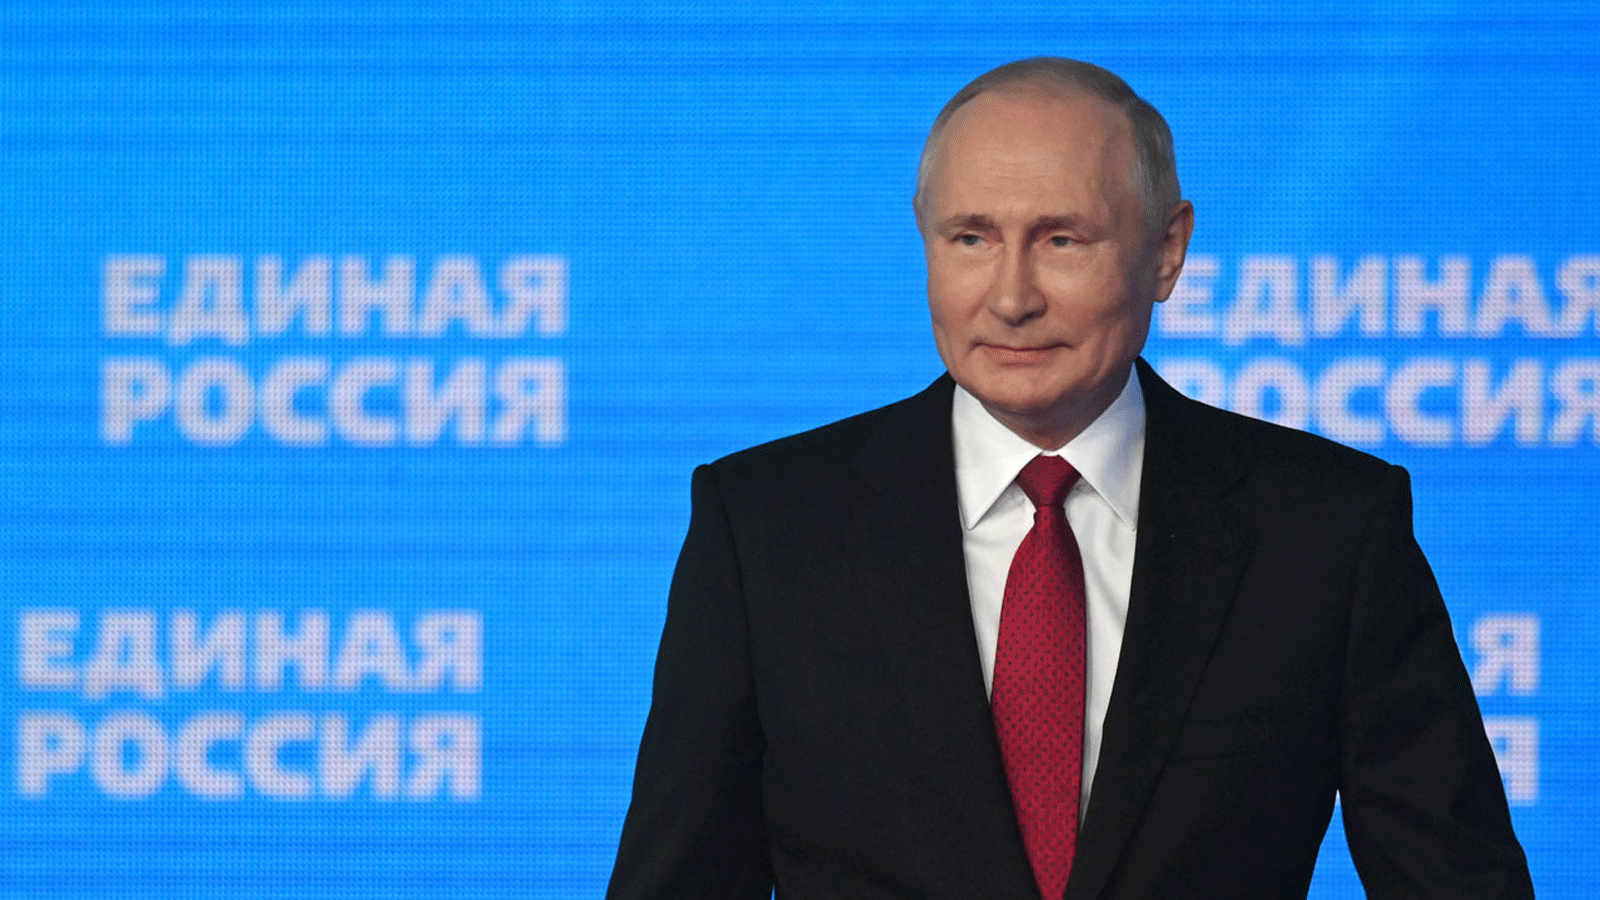 الرئيس الروسي فلاديمير بوتين خلال مؤتمر حزب روسيا الموحدة الحاكم في موسكو 24آب/ أغسطس 2021